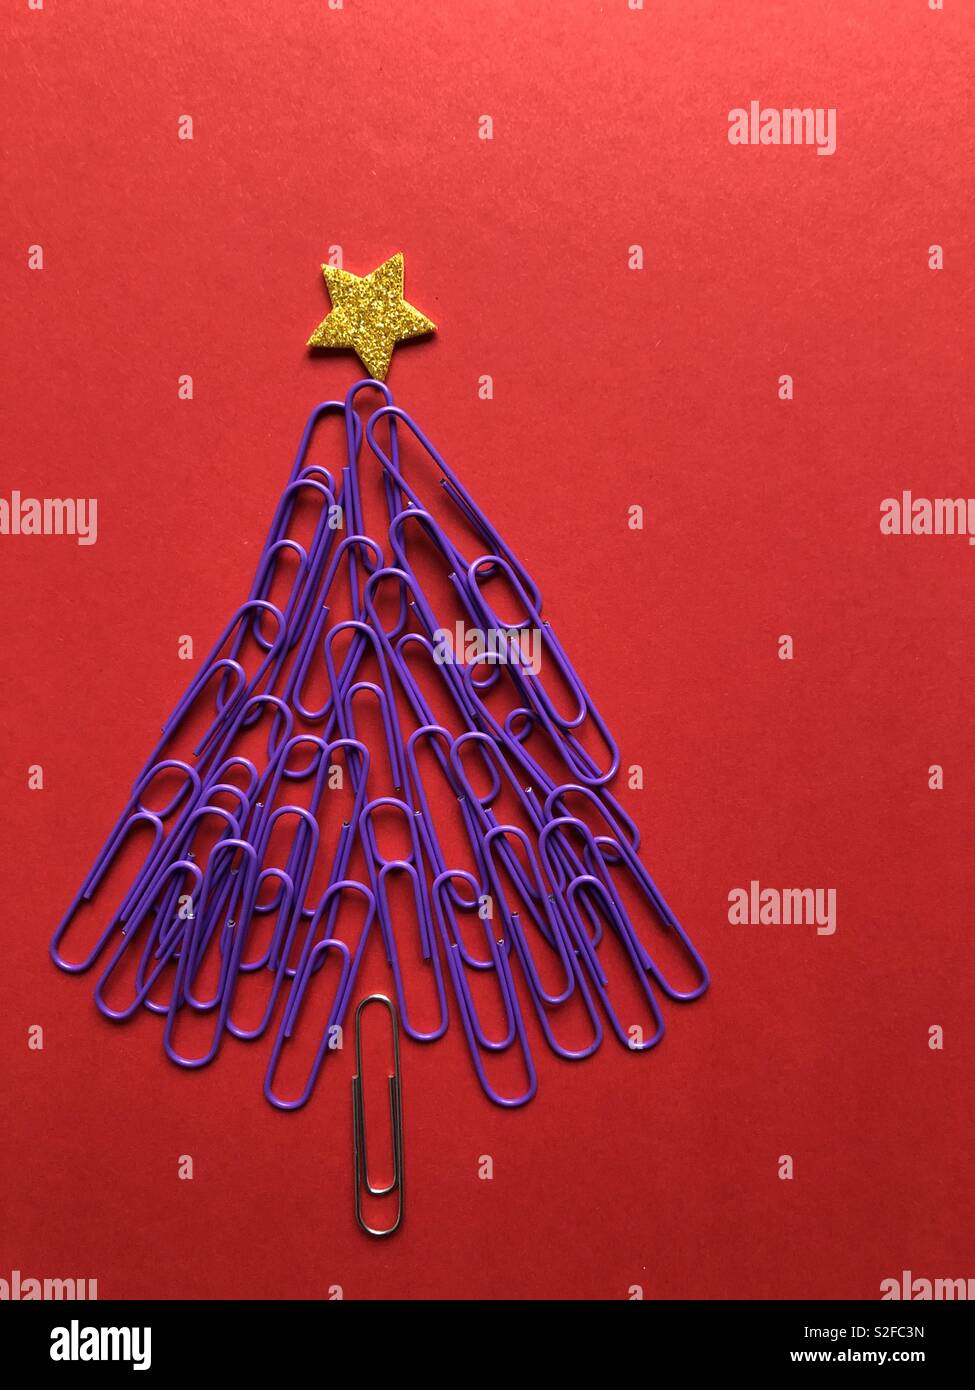 Kreative Weihnachten Konzept. Weihnachtsbaum aus lila Büroklammern gekrönt mit einem goldenen Stern auf rotem Hintergrund mit Kopie Raum Stockfoto